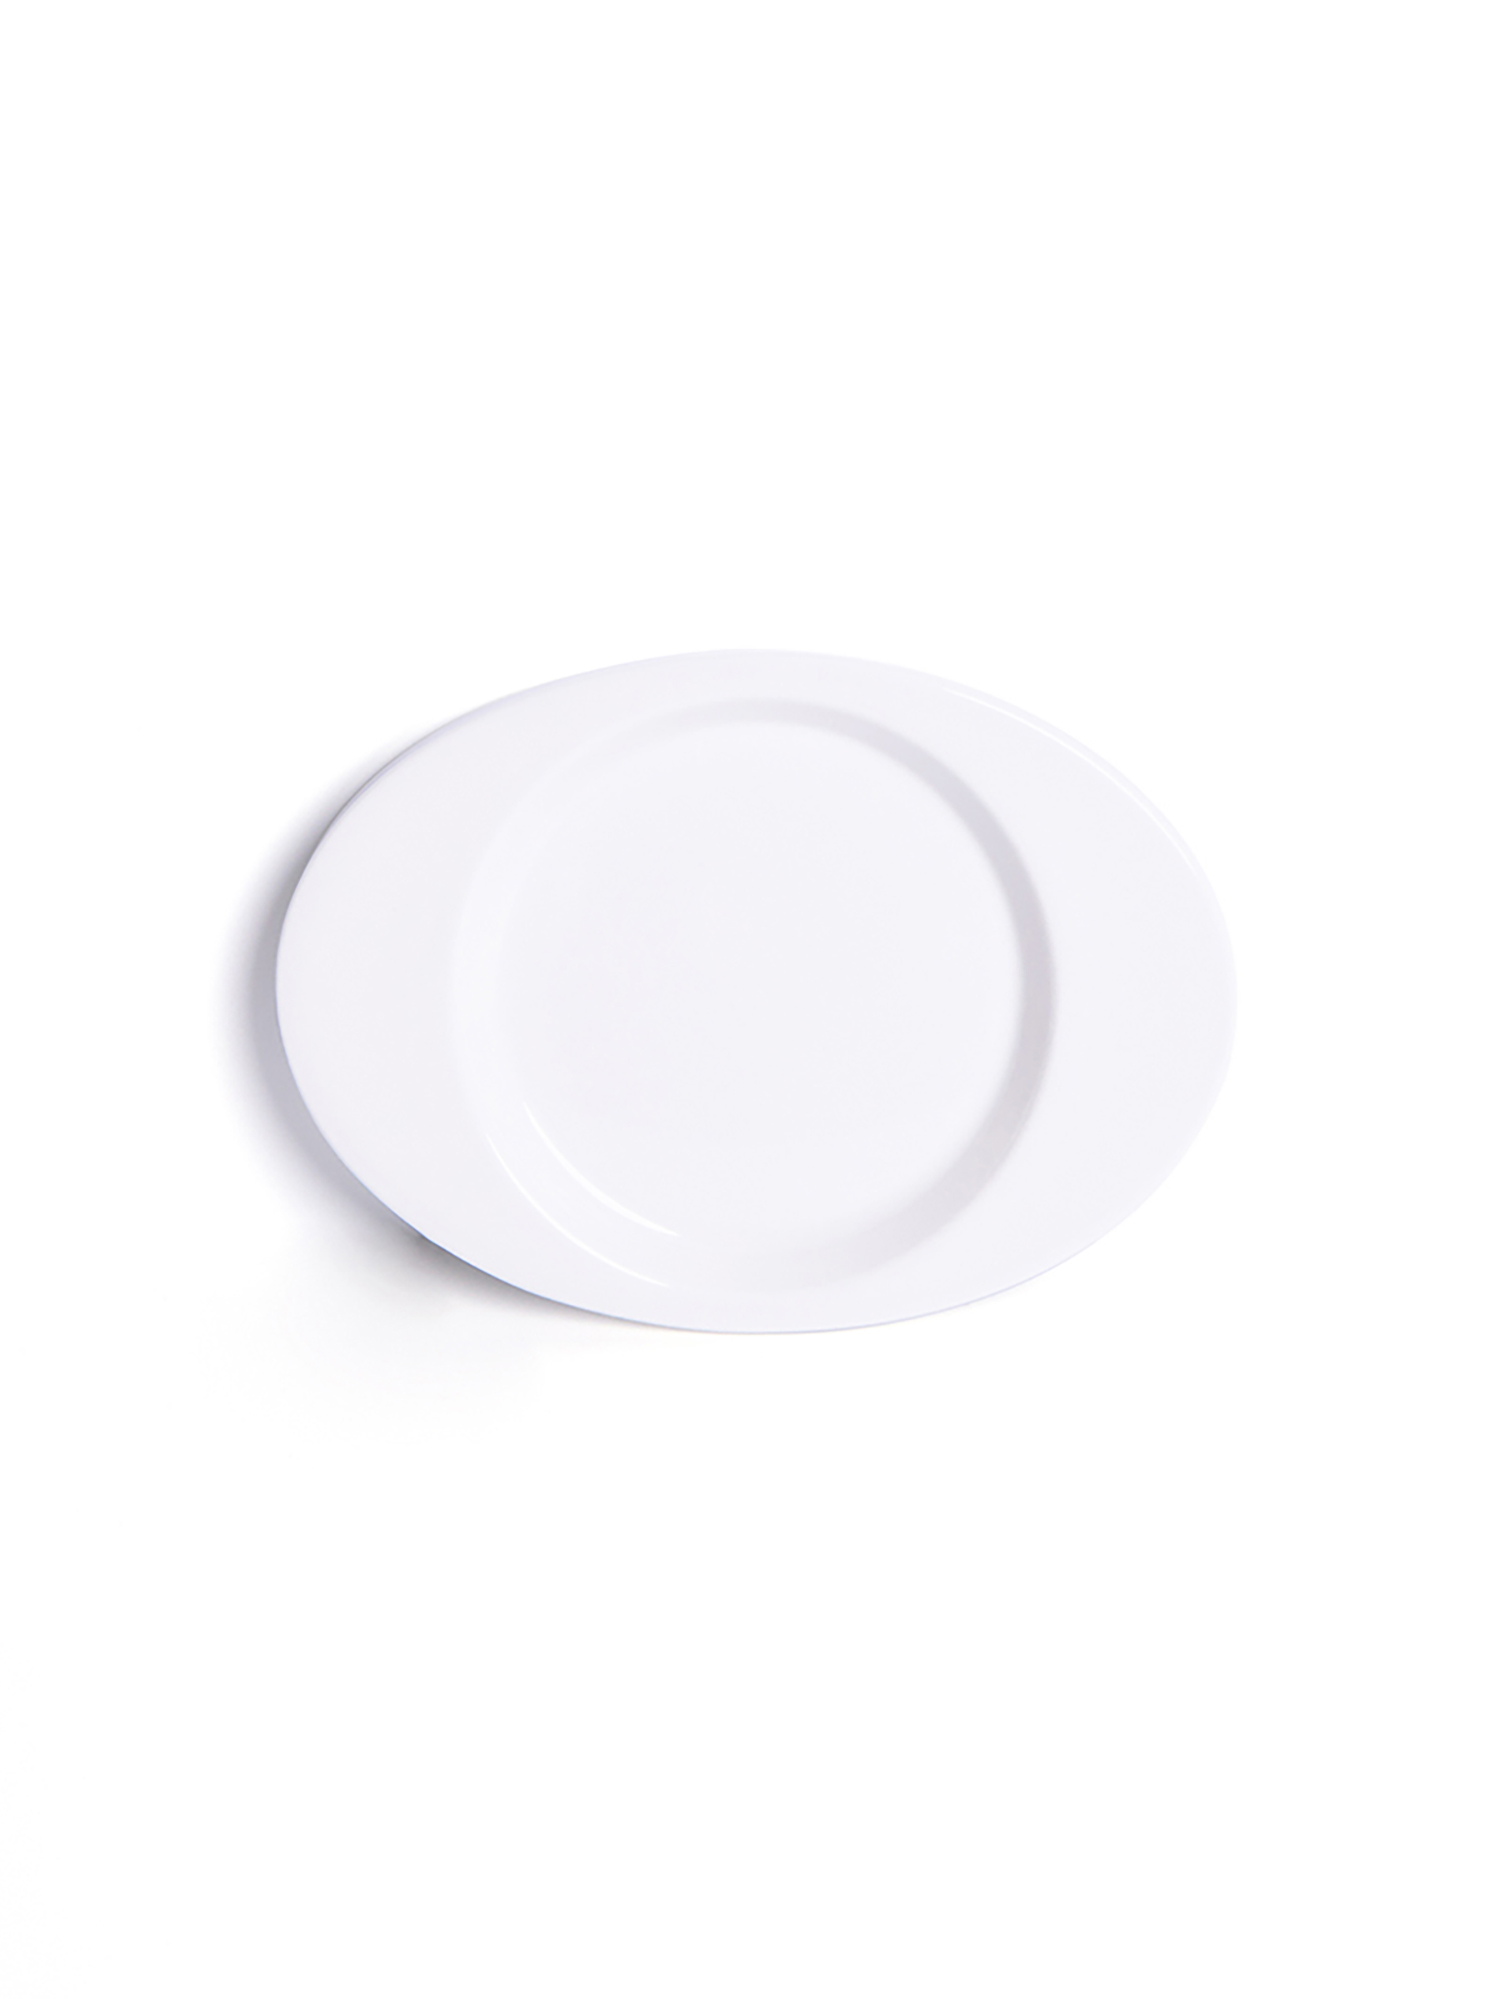 YEP Signature Plate - White